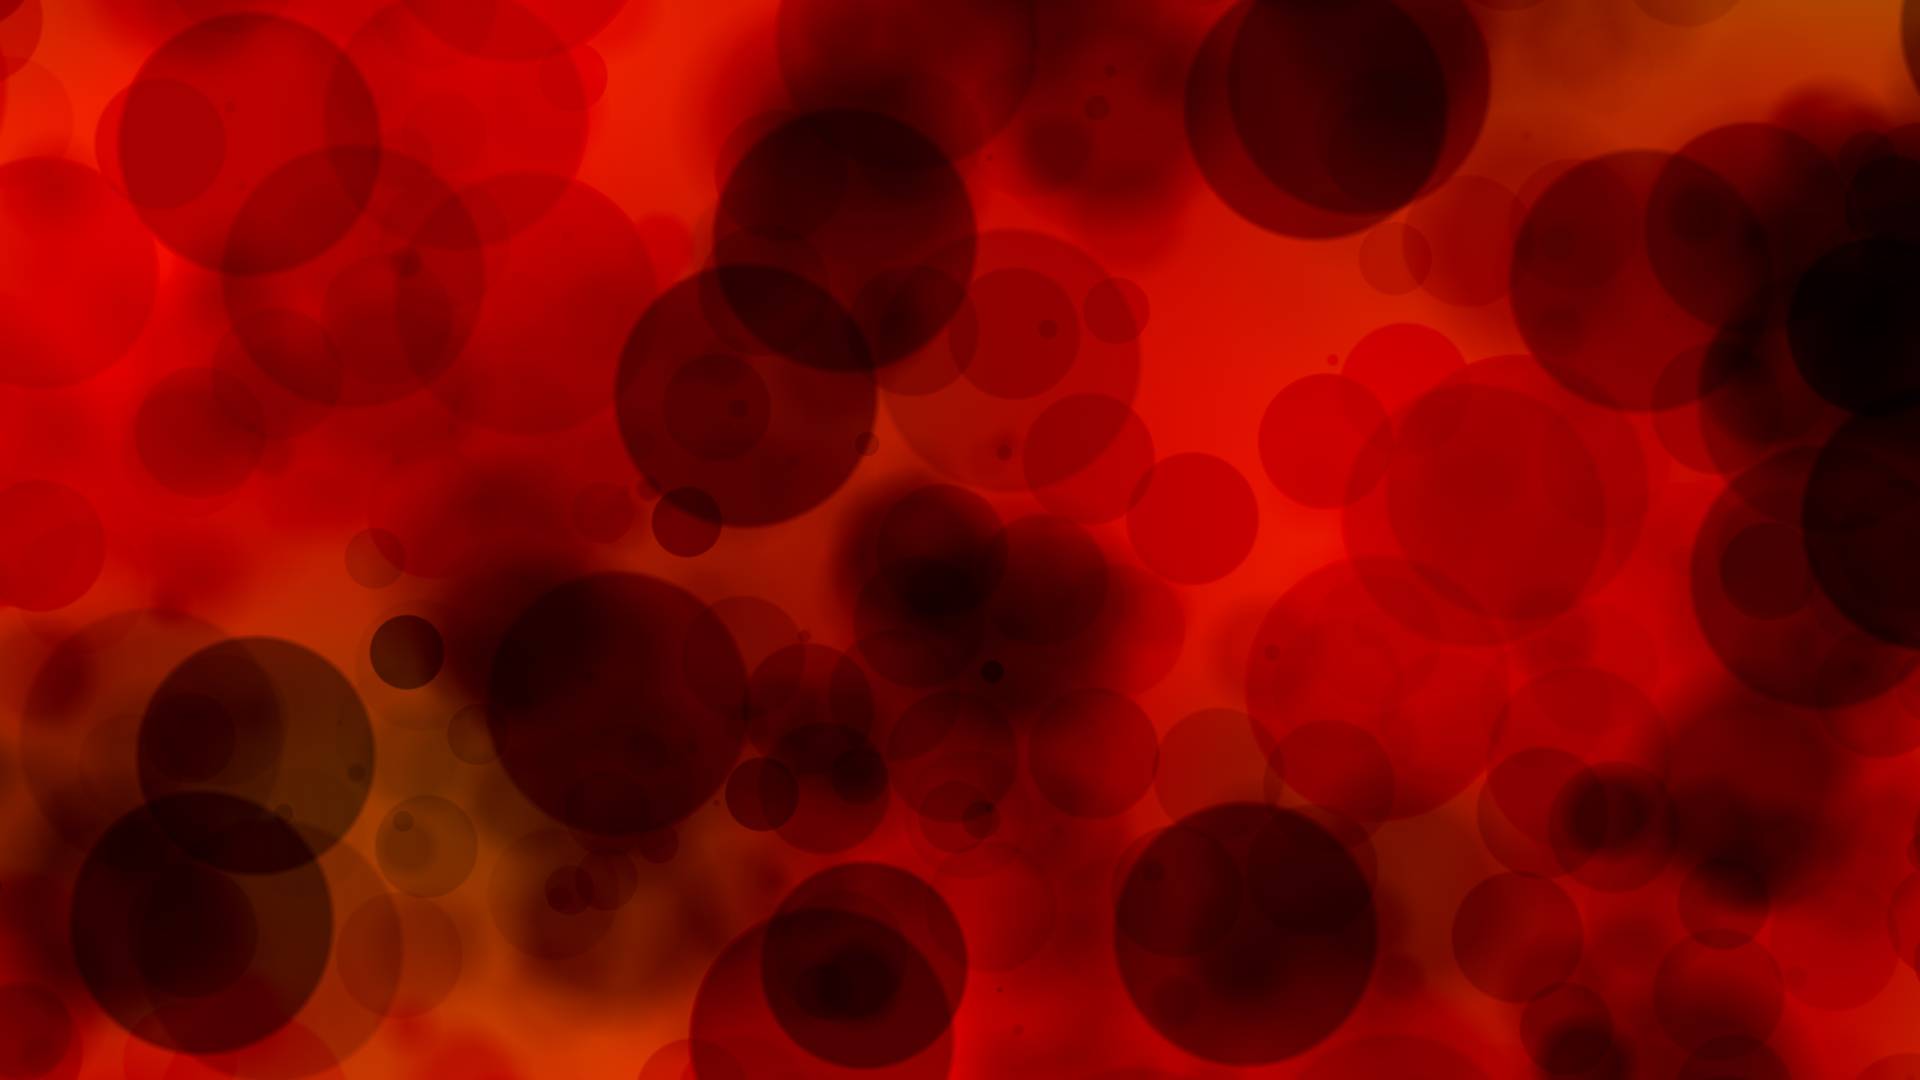 Mikroplastik erstmals in menschlichem Blut identifiziert